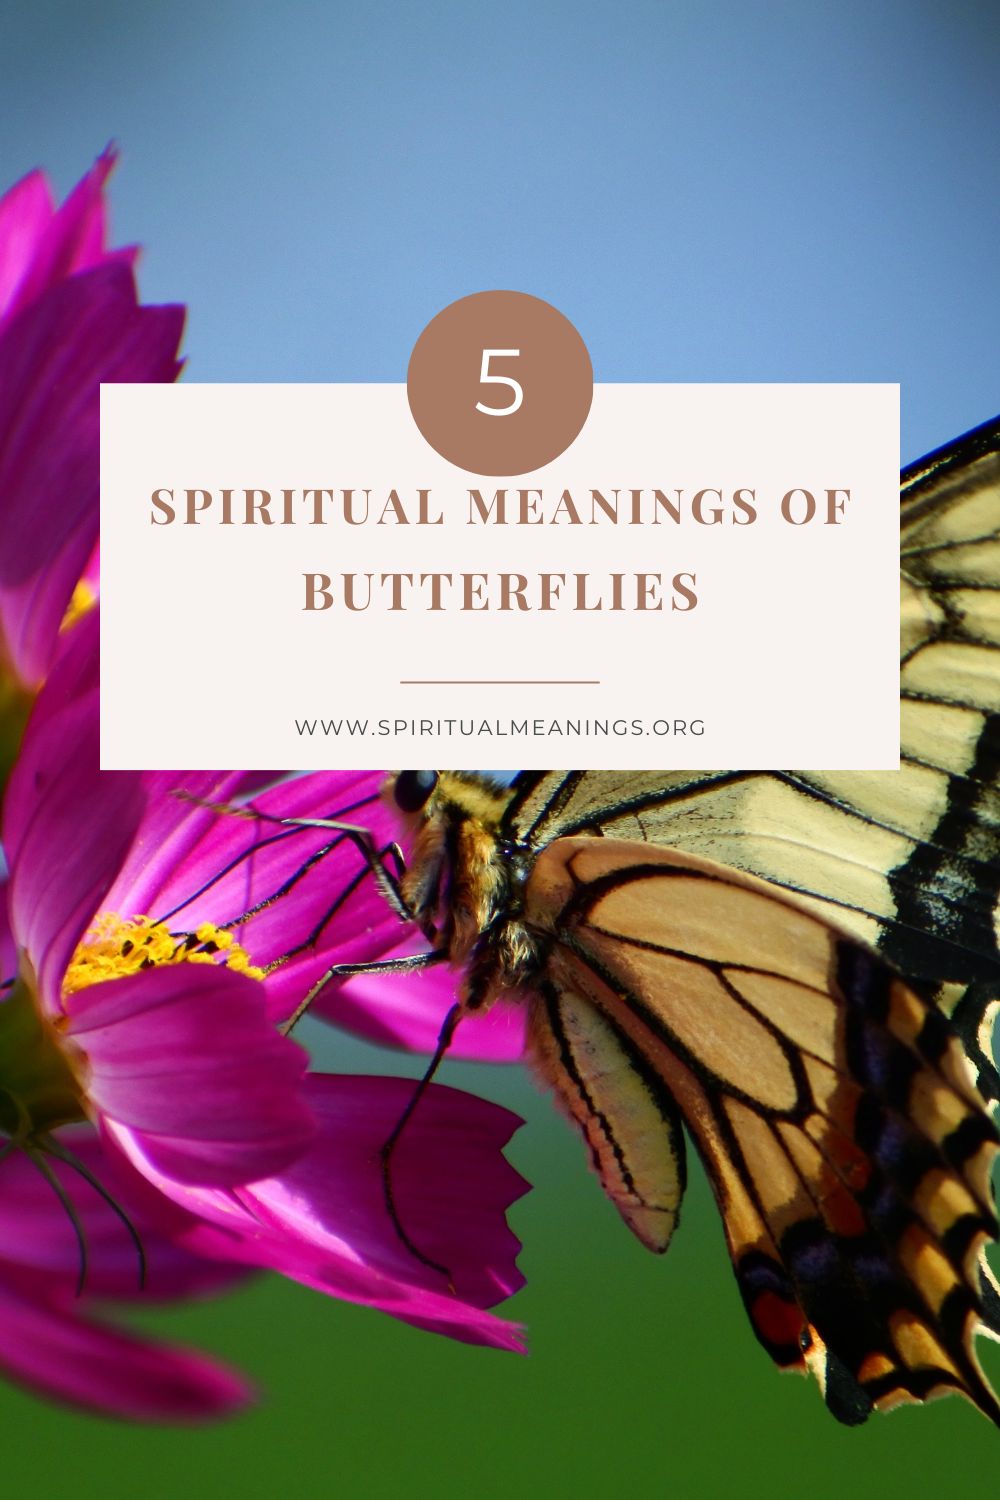 Butterflies as Spiritual Messengers